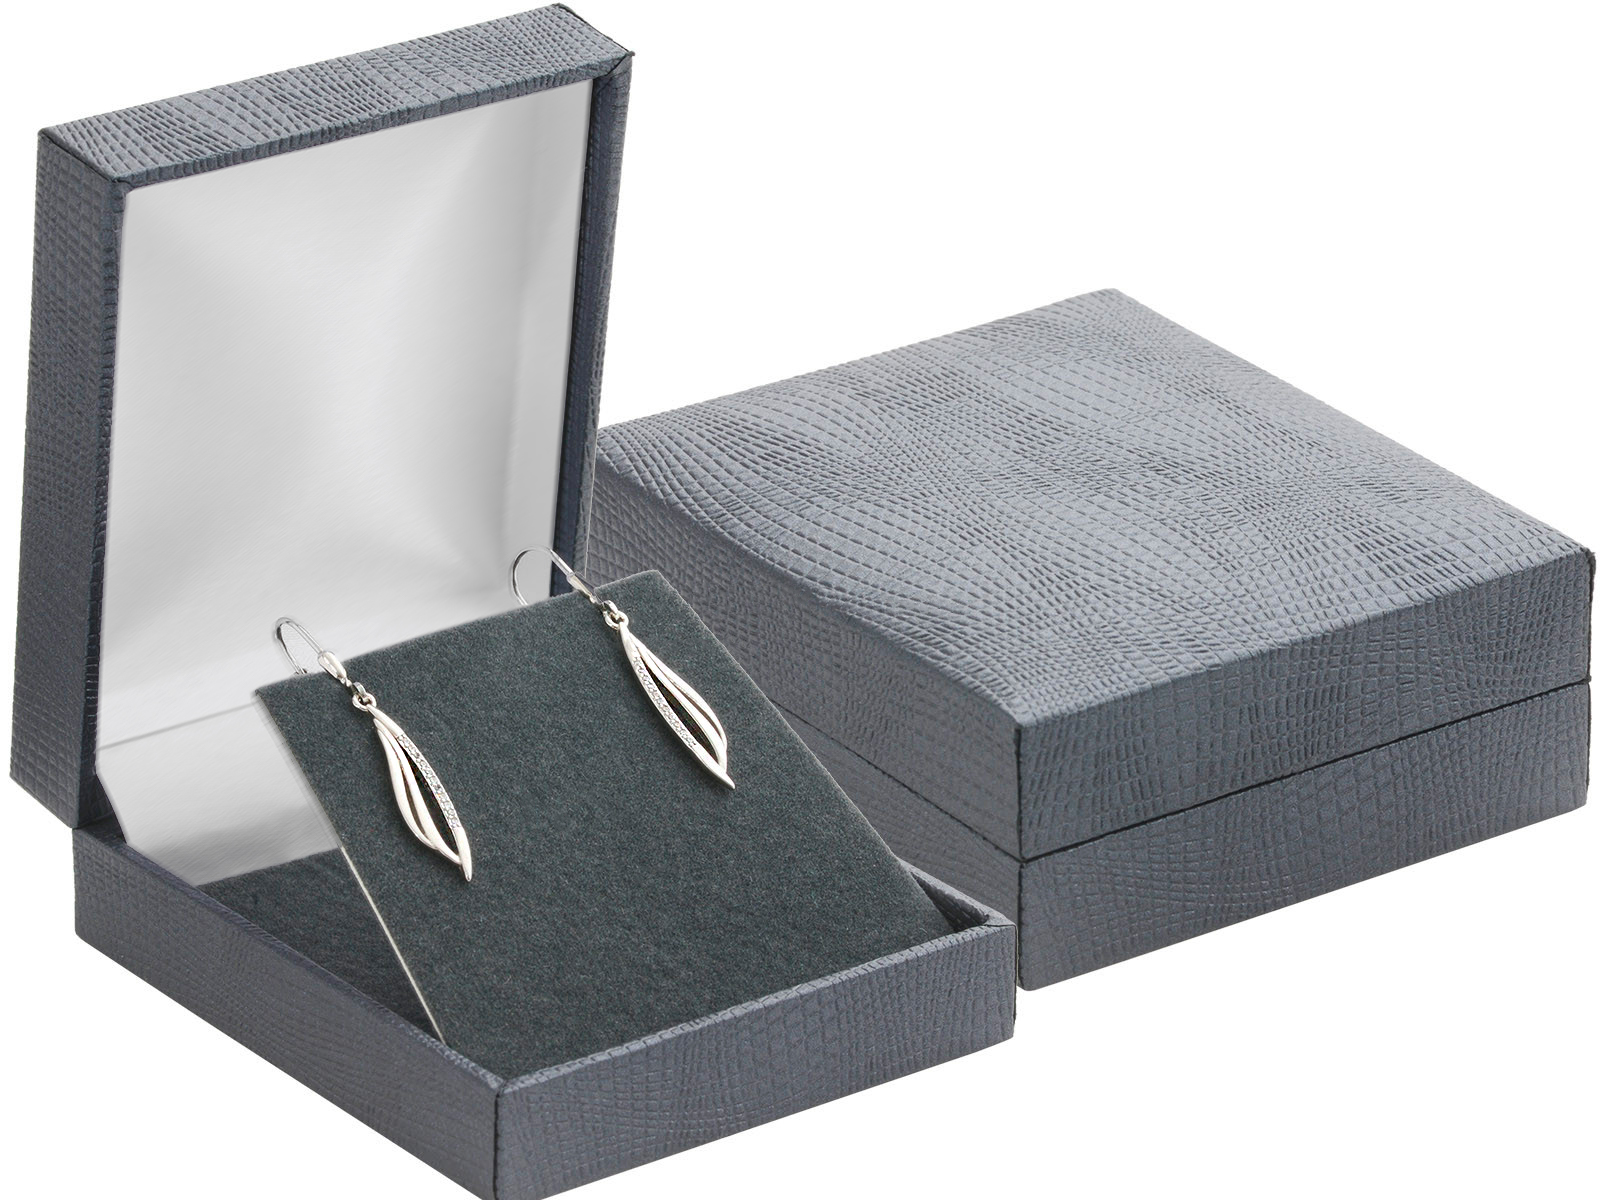 E-shop JKBOX Luxusná koženková čierna krabička na malú sadu šperkov IK033-SAM Značka: Sam's Artisans